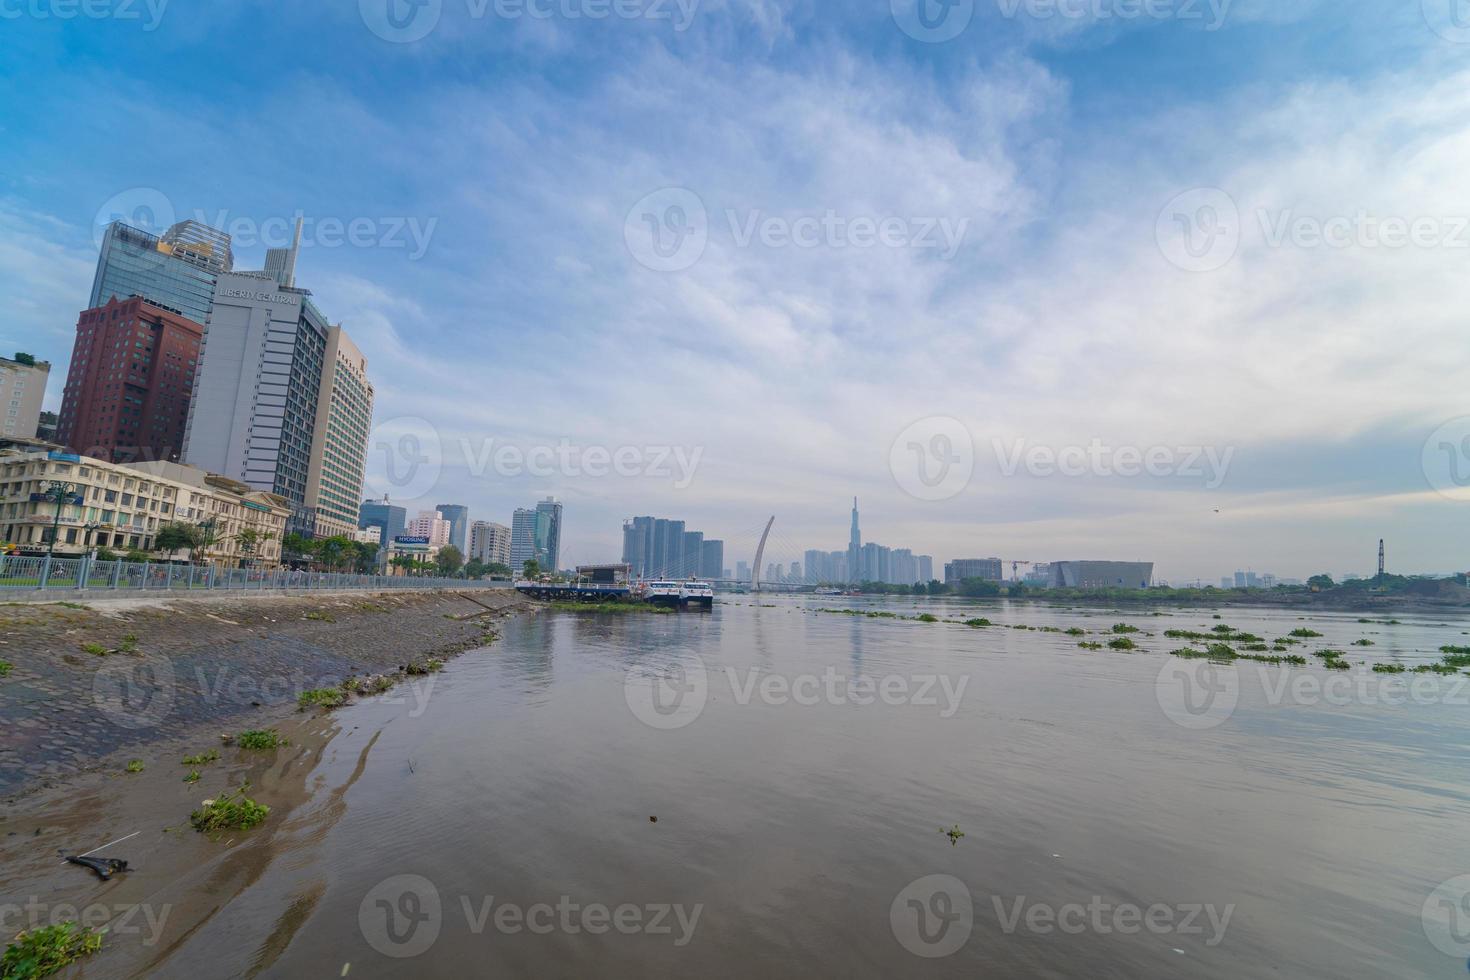 ciudad de ho chi minh, vietnam - 12 de febrero de 2022 horizonte con el emblemático rascacielos 81, se está construyendo un nuevo puente atirantado que conecta la península de thu thiem y el distrito 1 a través del río saigon. foto